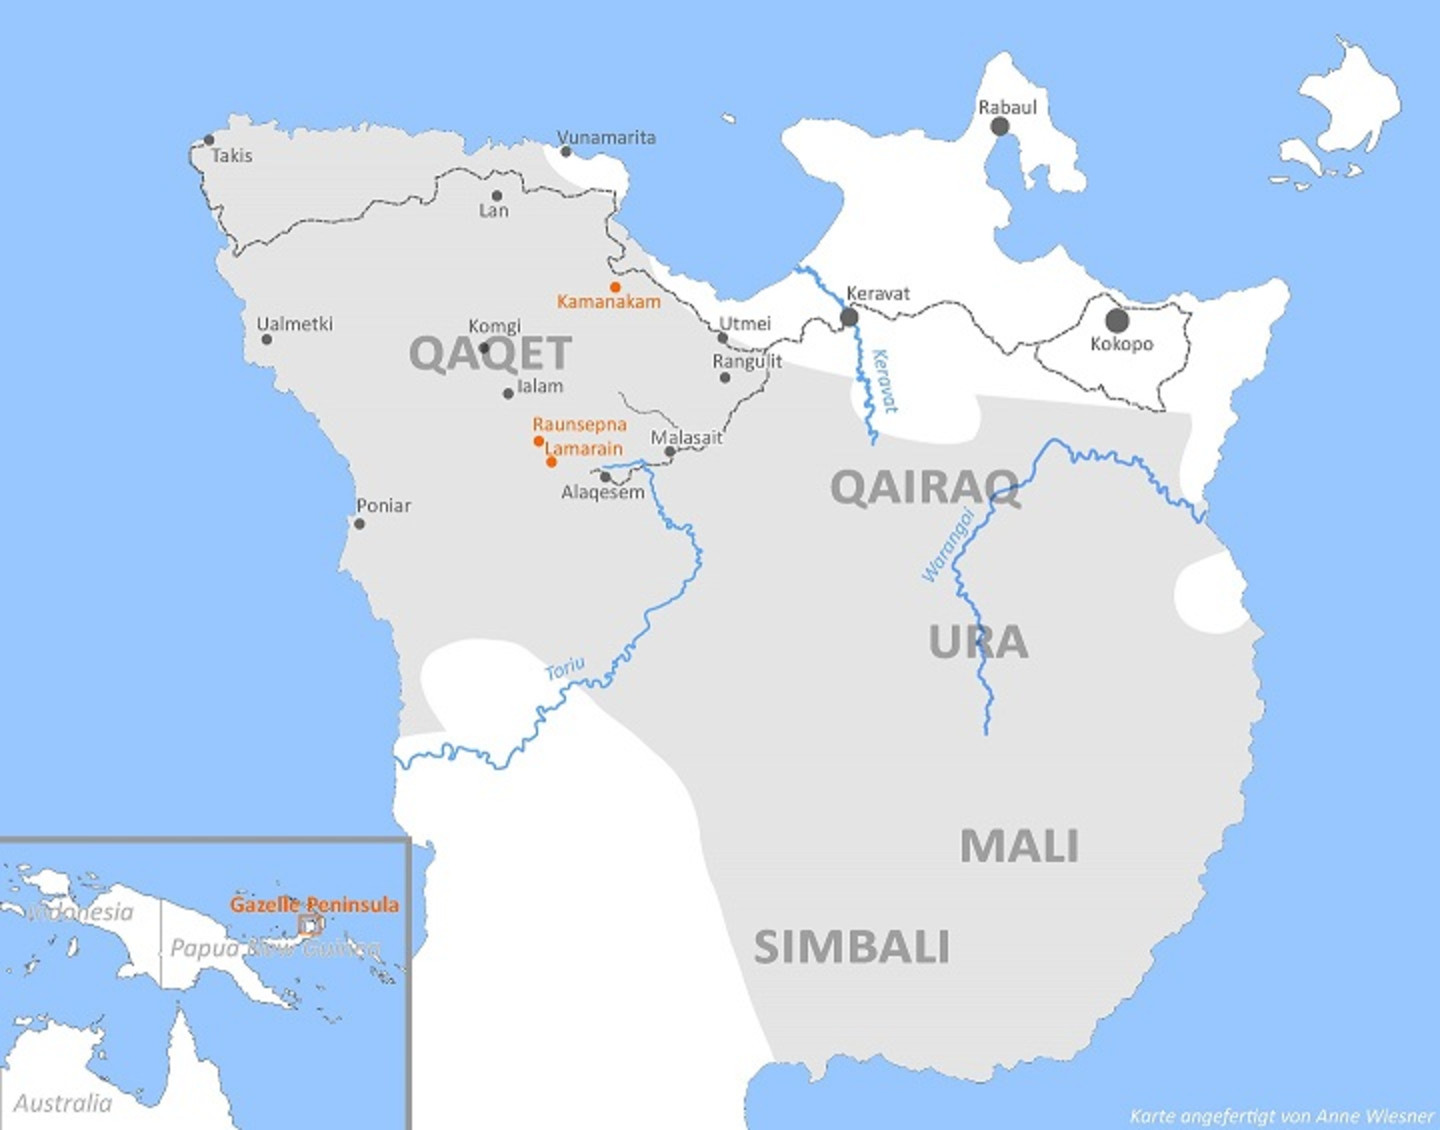 Map of the Baining languages on the Gazelle Peninsula